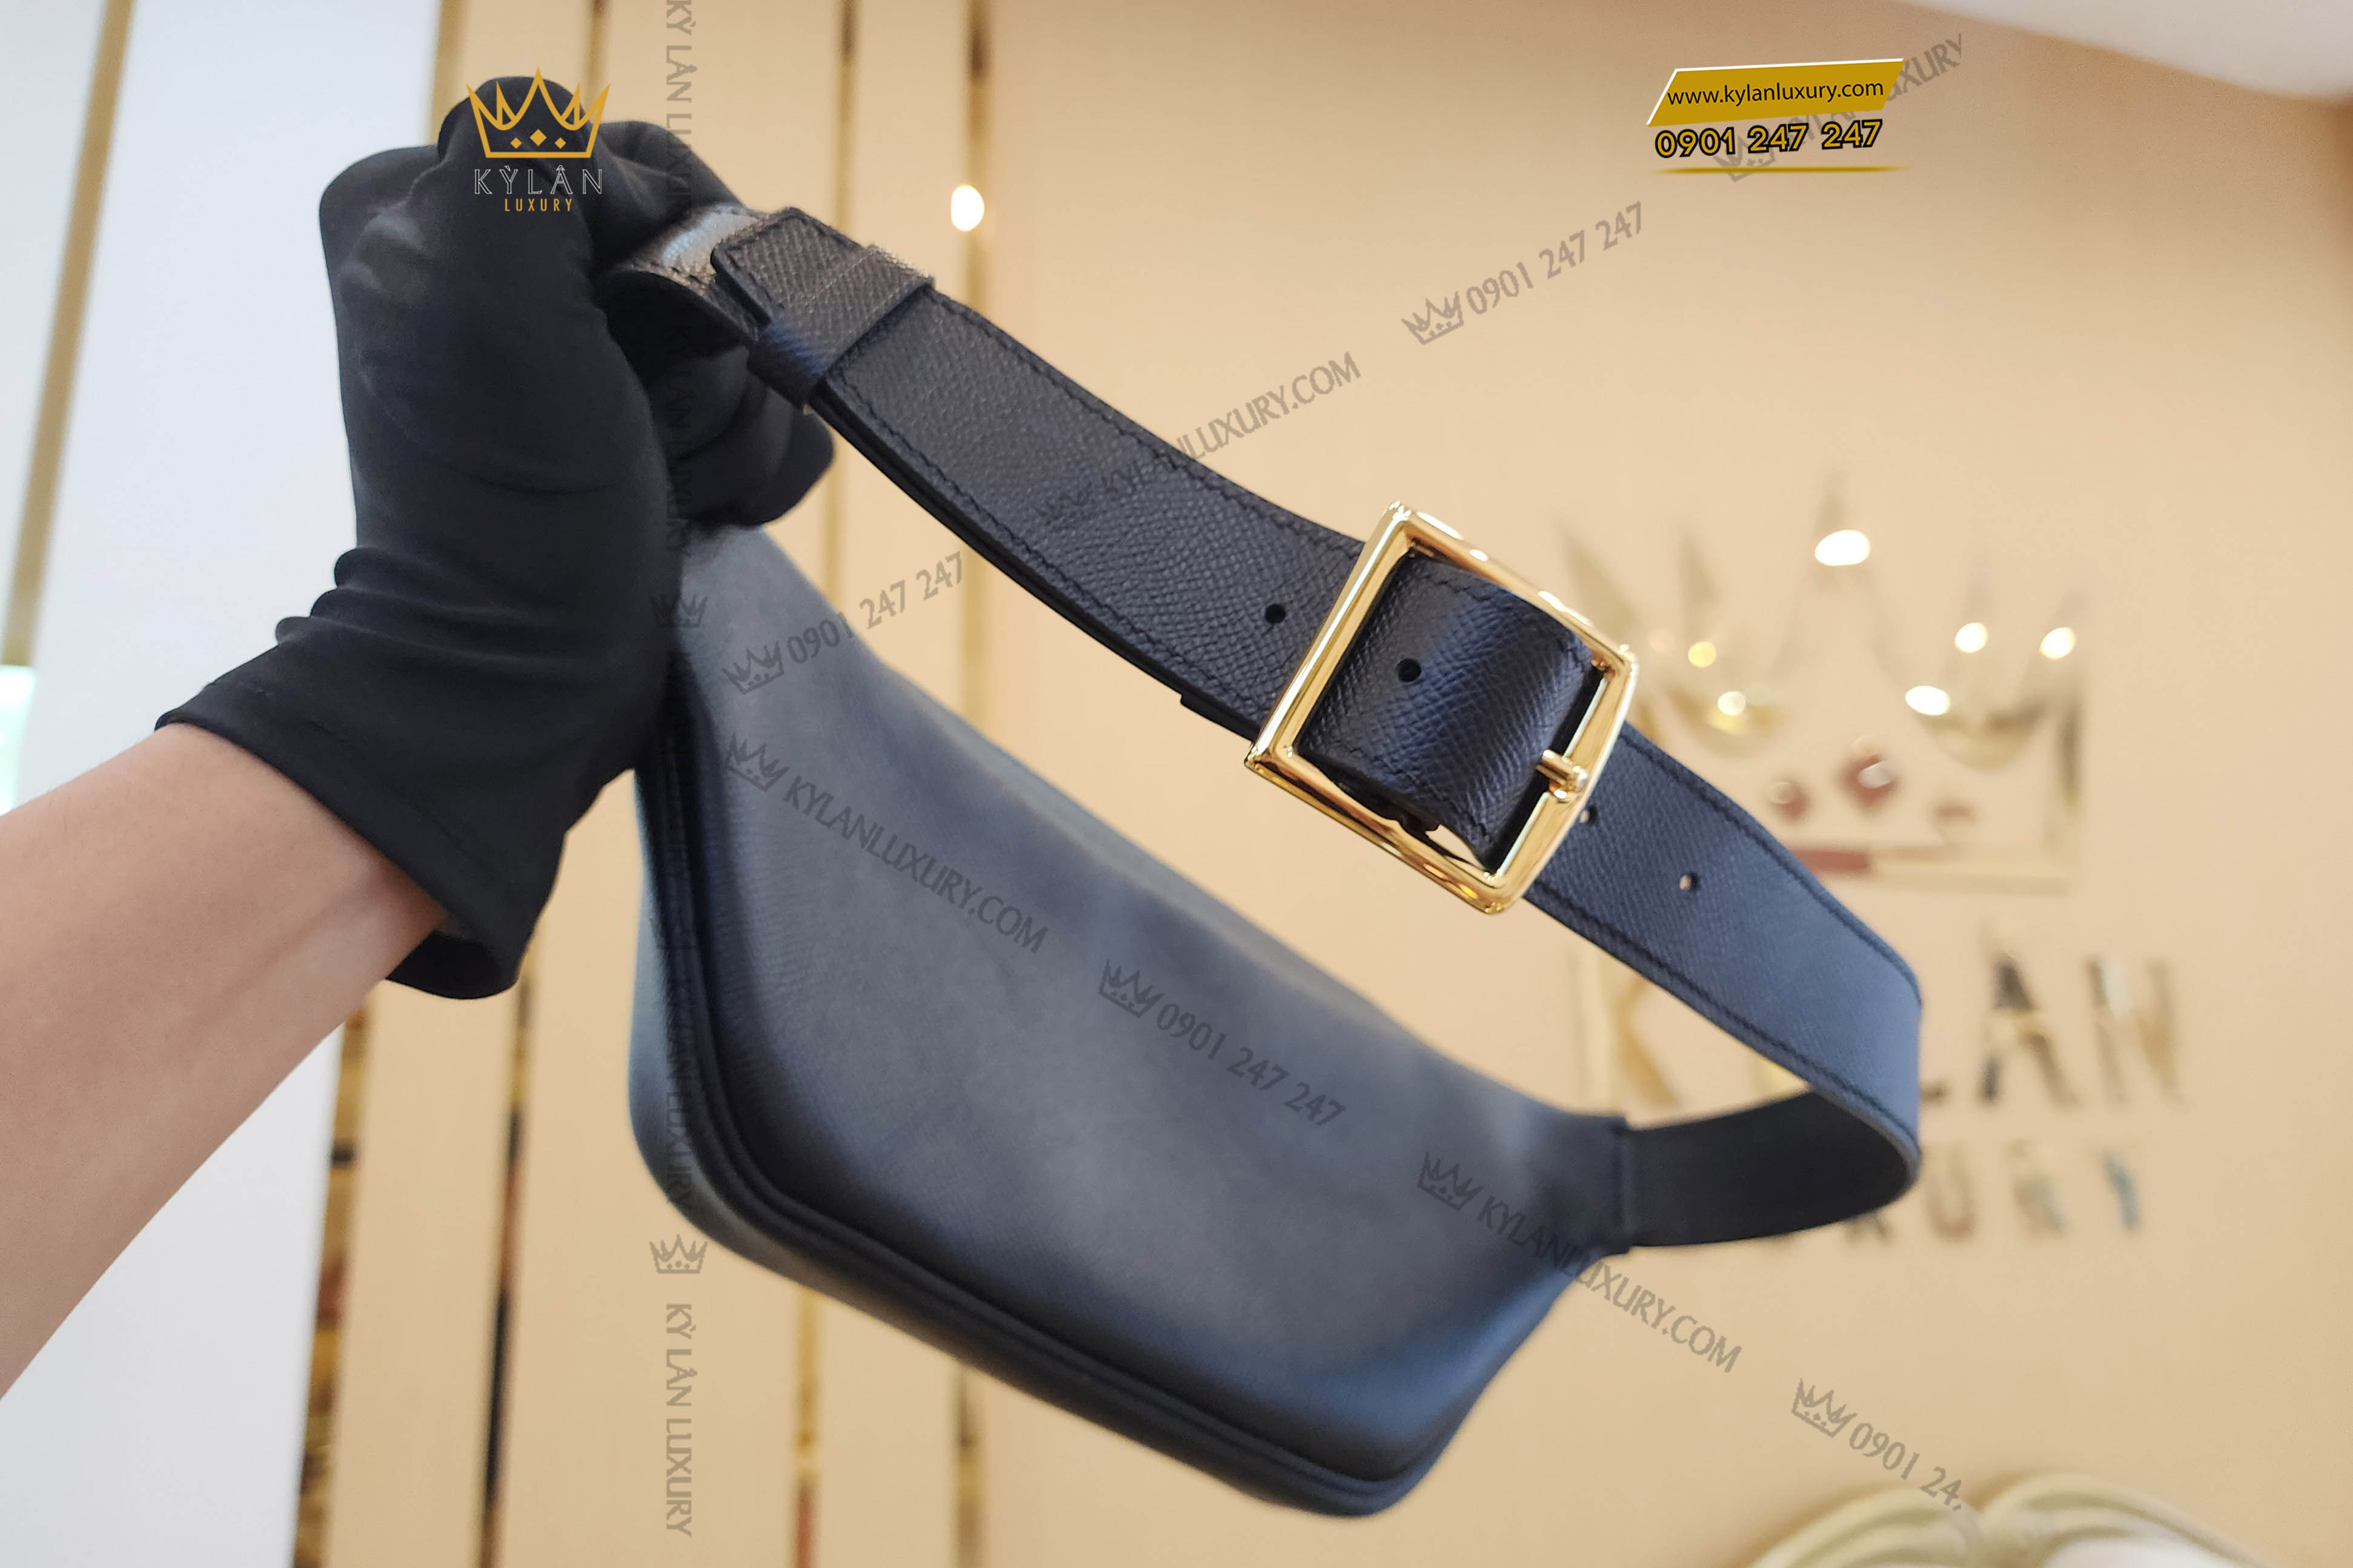 Phần dây buộc của túi bao tử được đục sẵn nhiều lỗ và đo theo size của quý khách, giúp quý khách sử dụng túi một cách tiện ích nhất